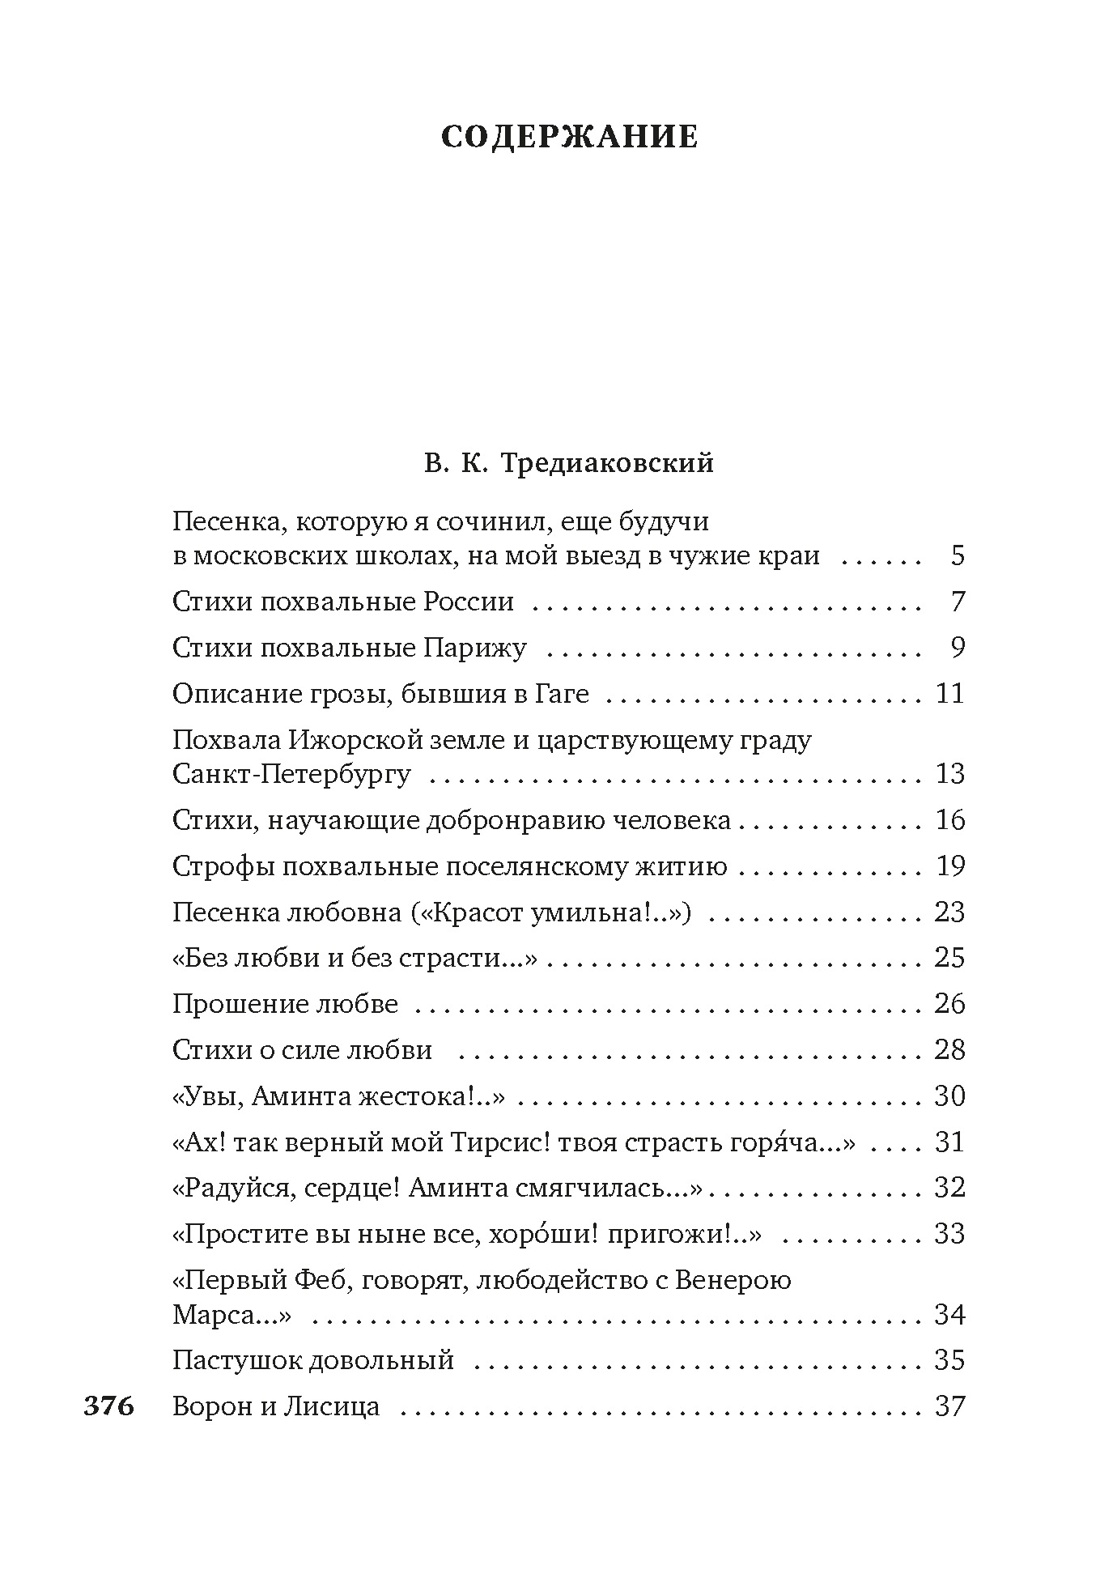 Русские поэты XVIII века, Отрывок из книги